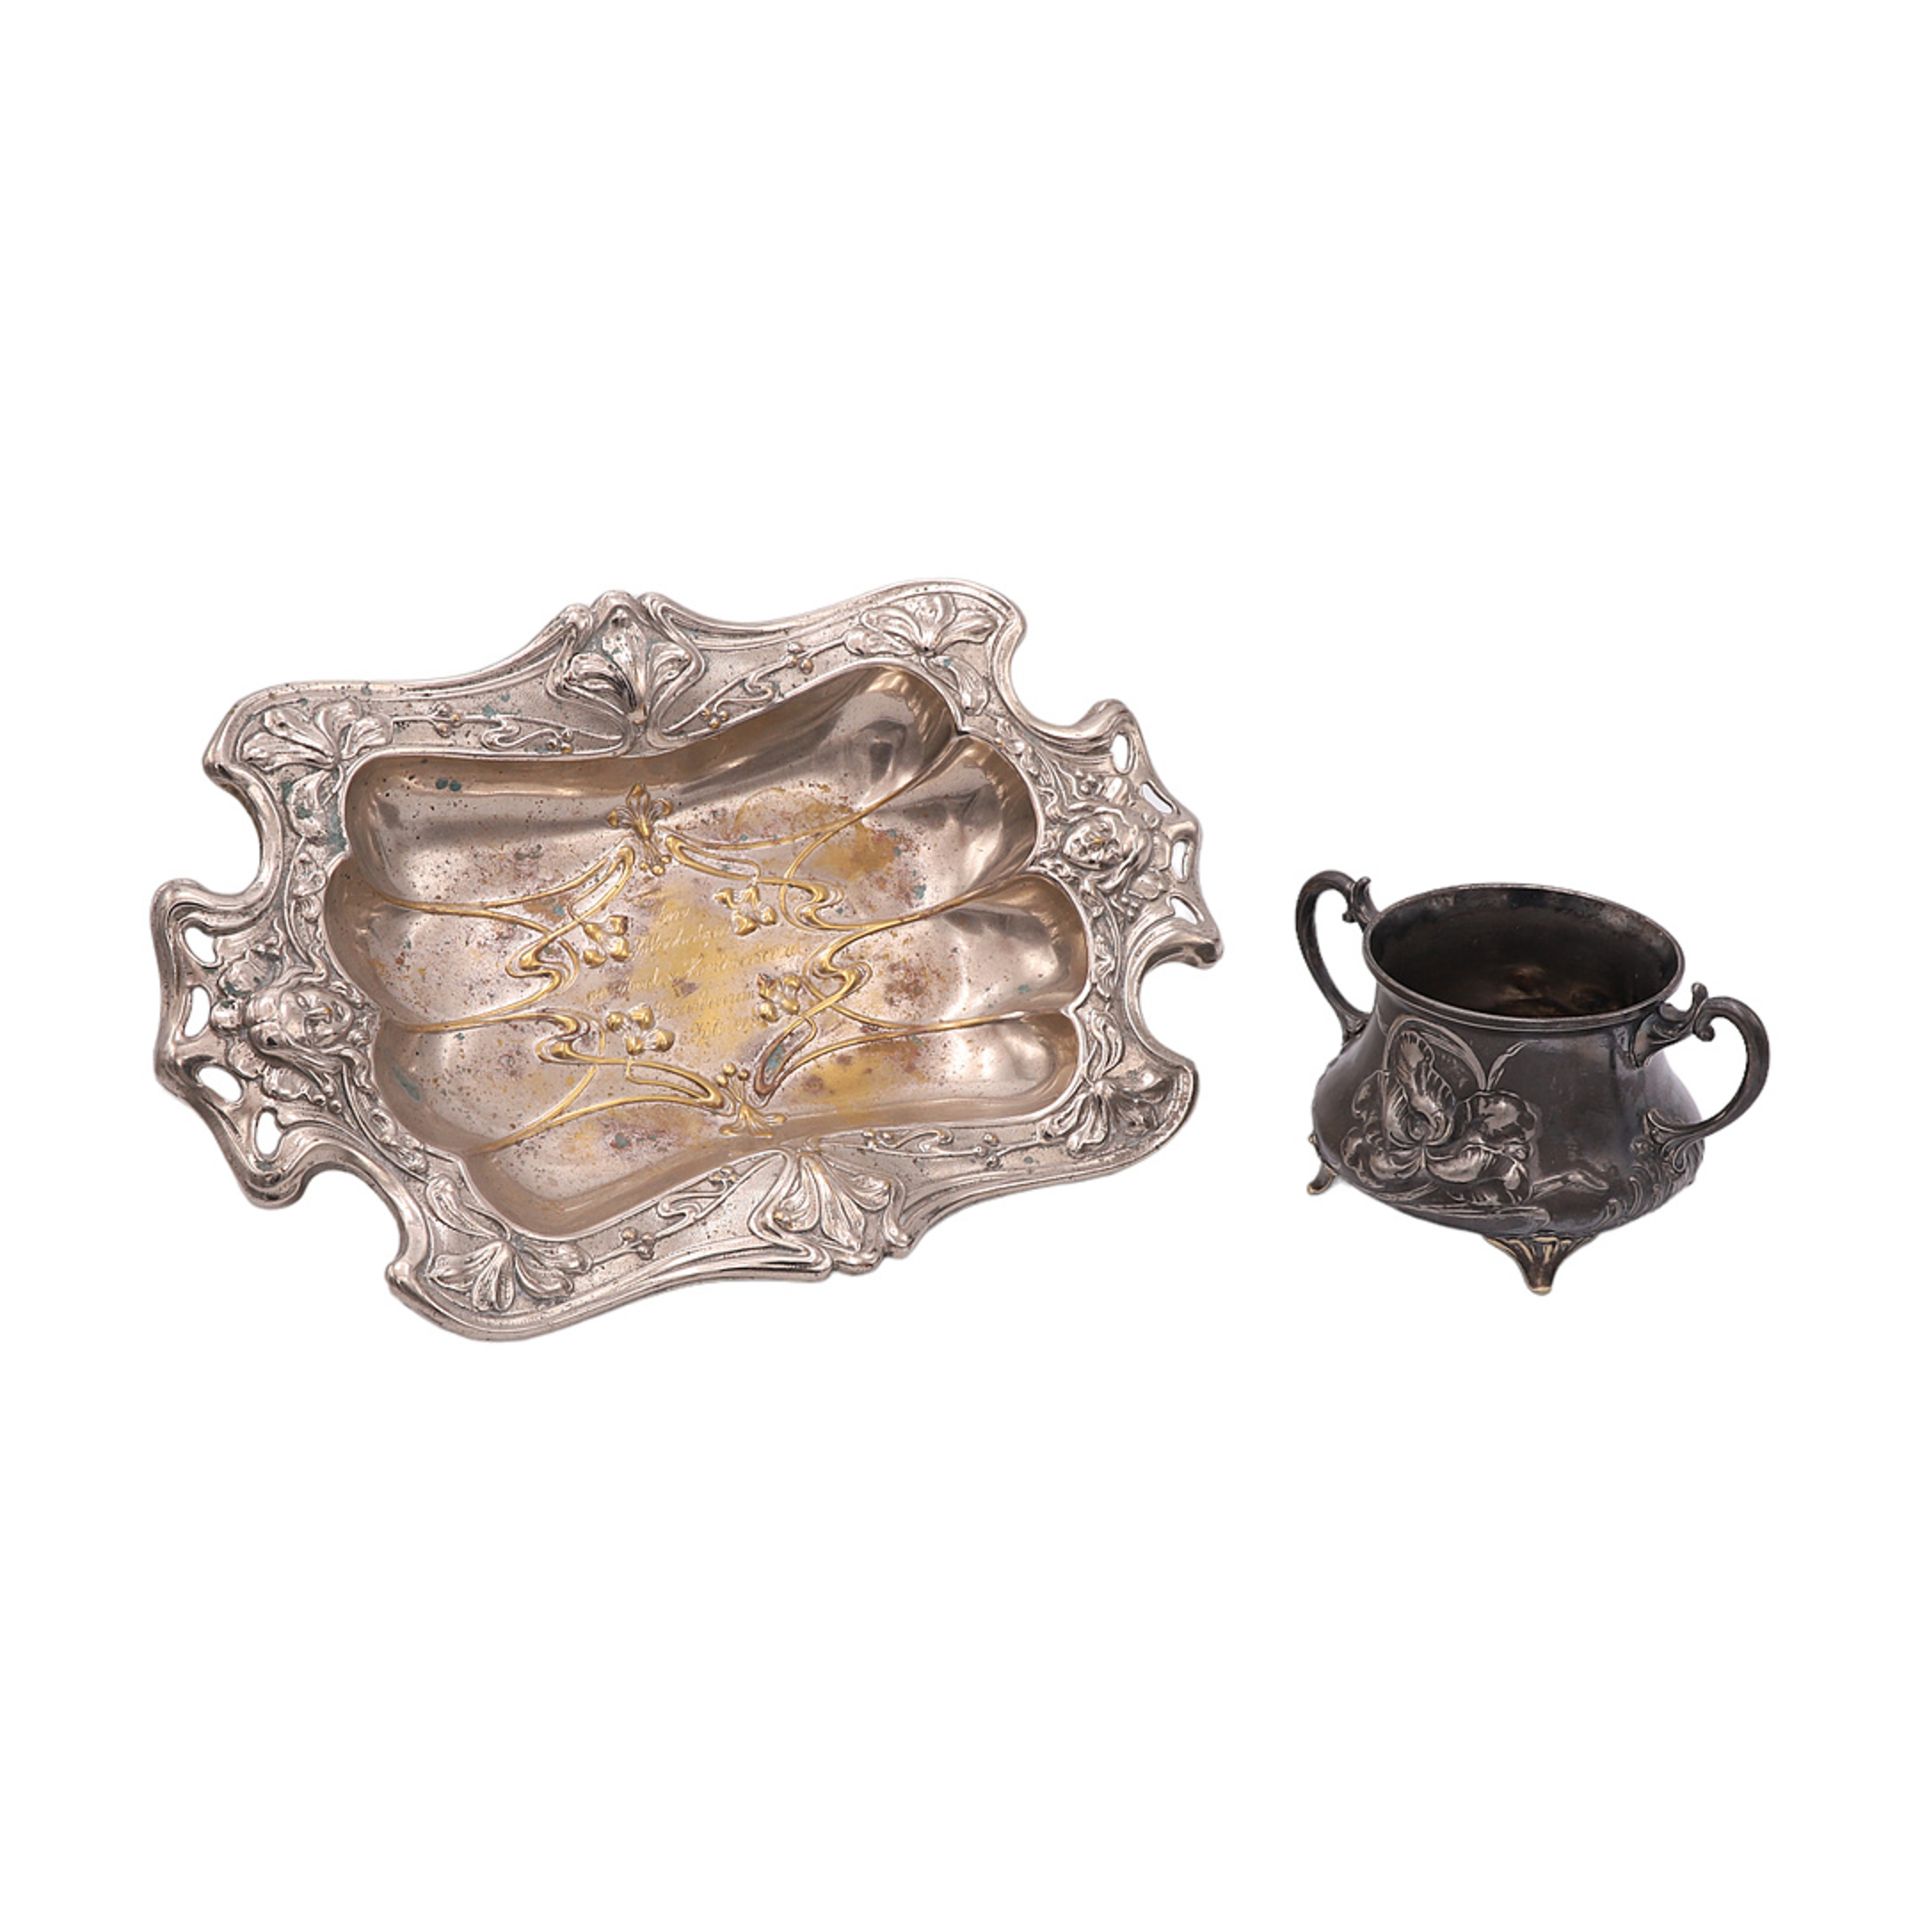 Bowl and sugar bowl, Art Nouveau